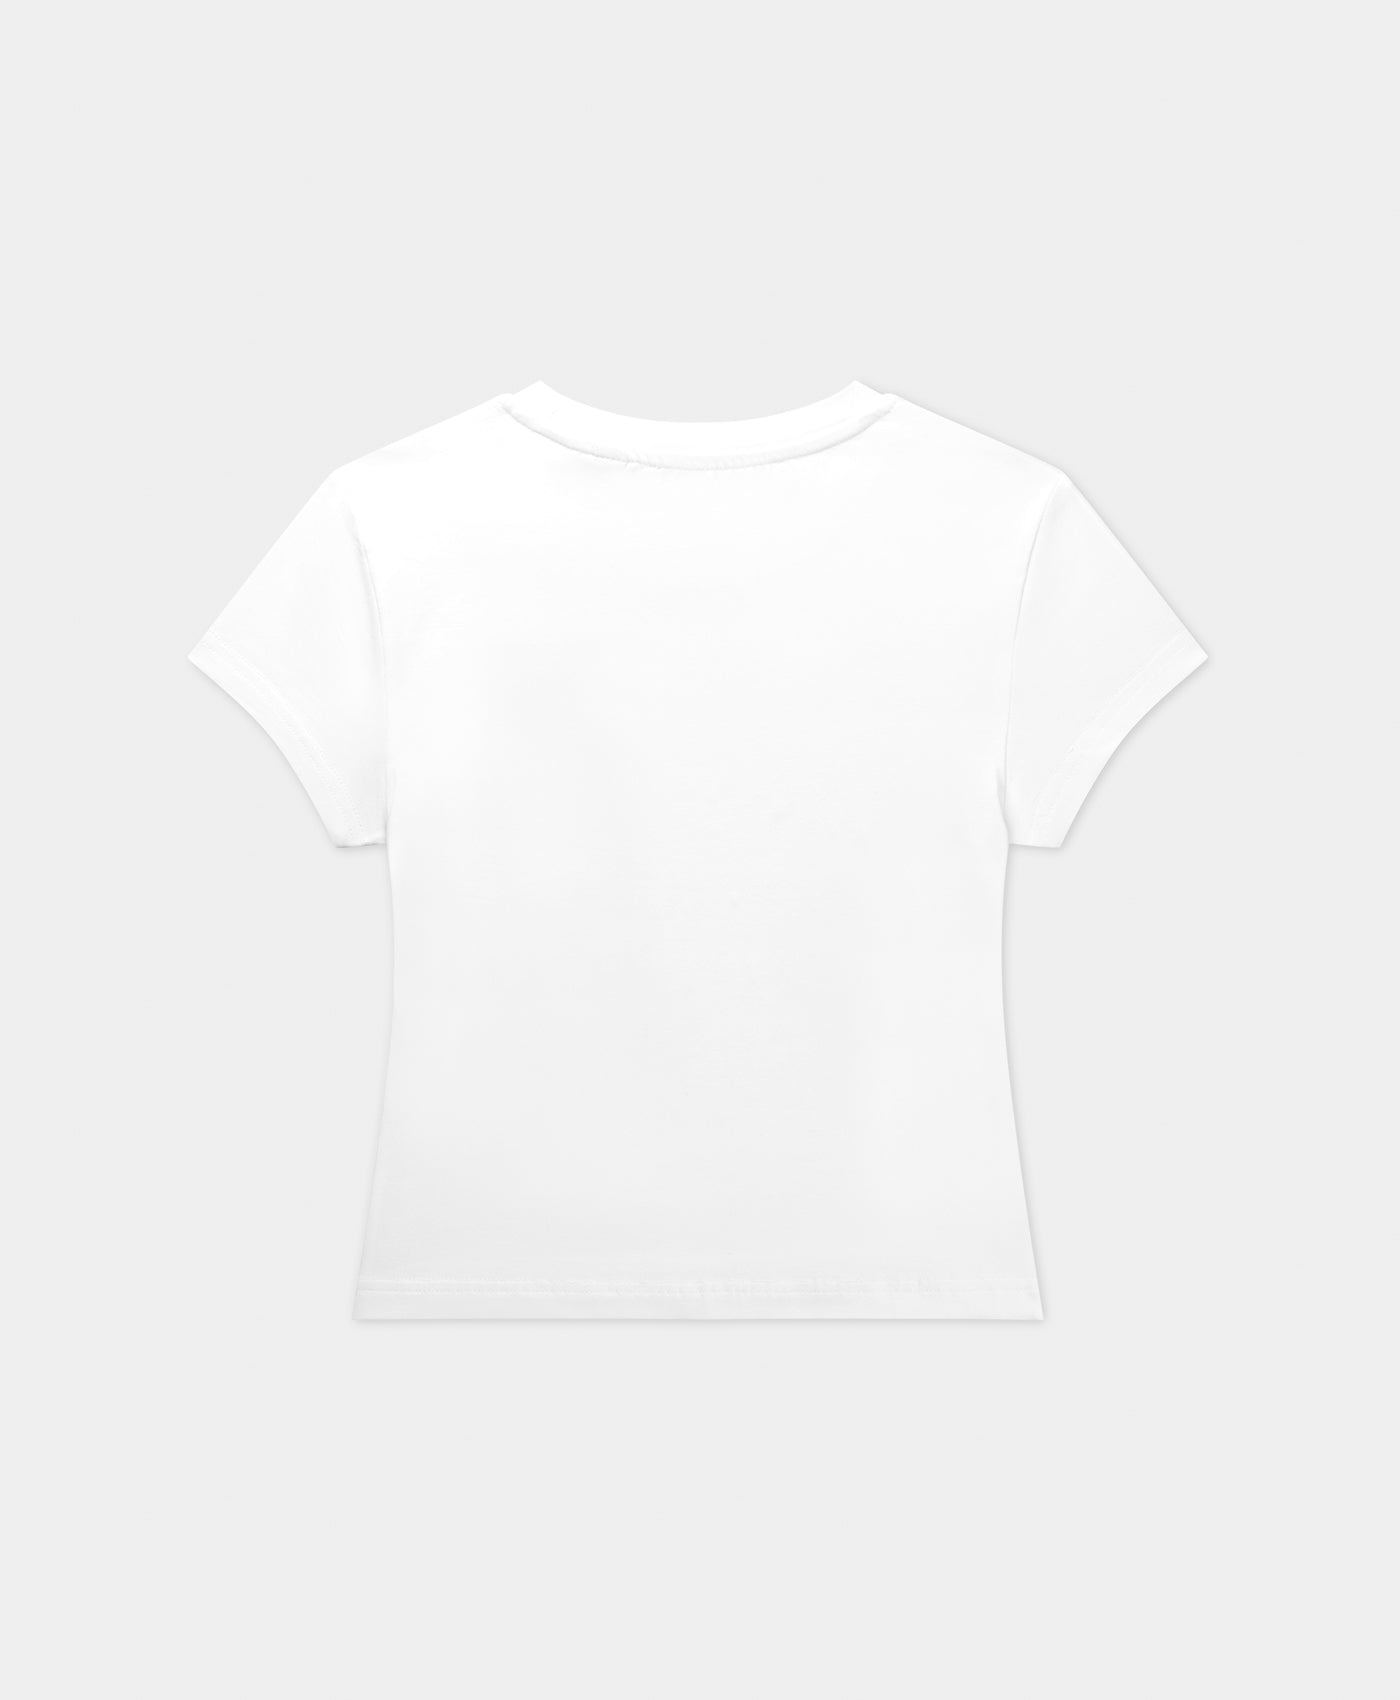 DP - White Logotype Cropped T-Shirt - Packshot - Rear